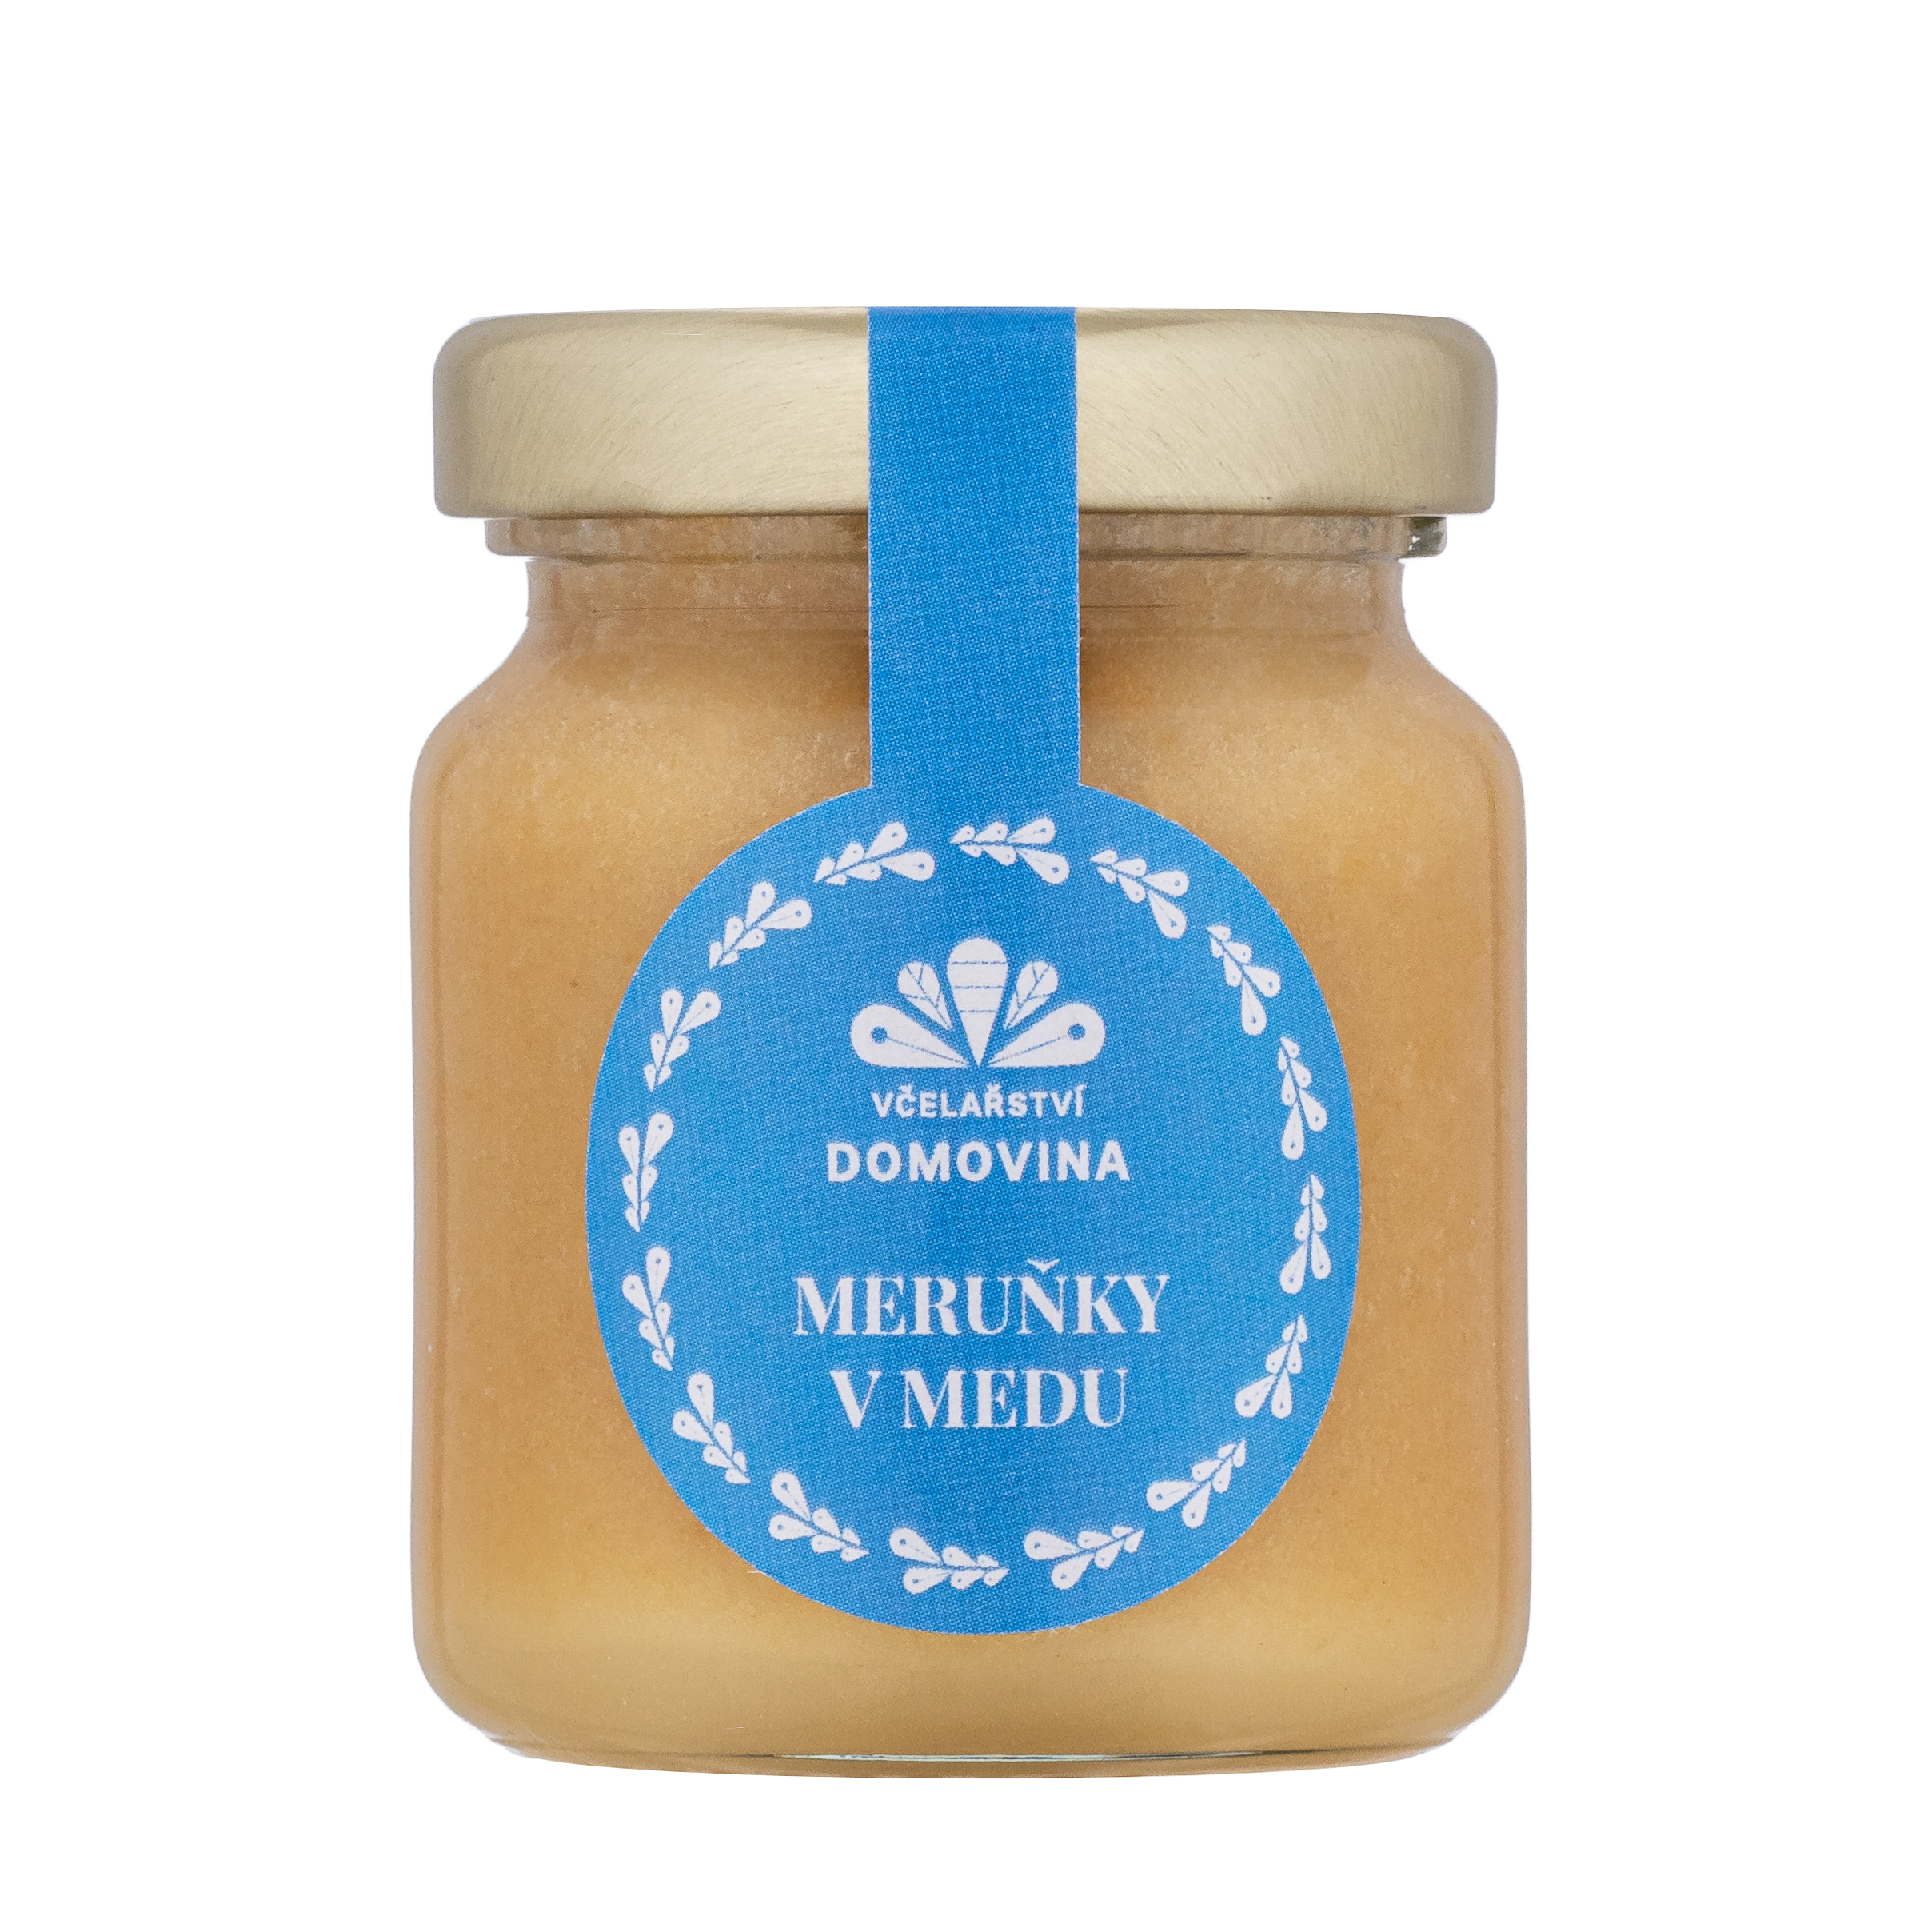 Meruňky v medu, hmotnost 75 g